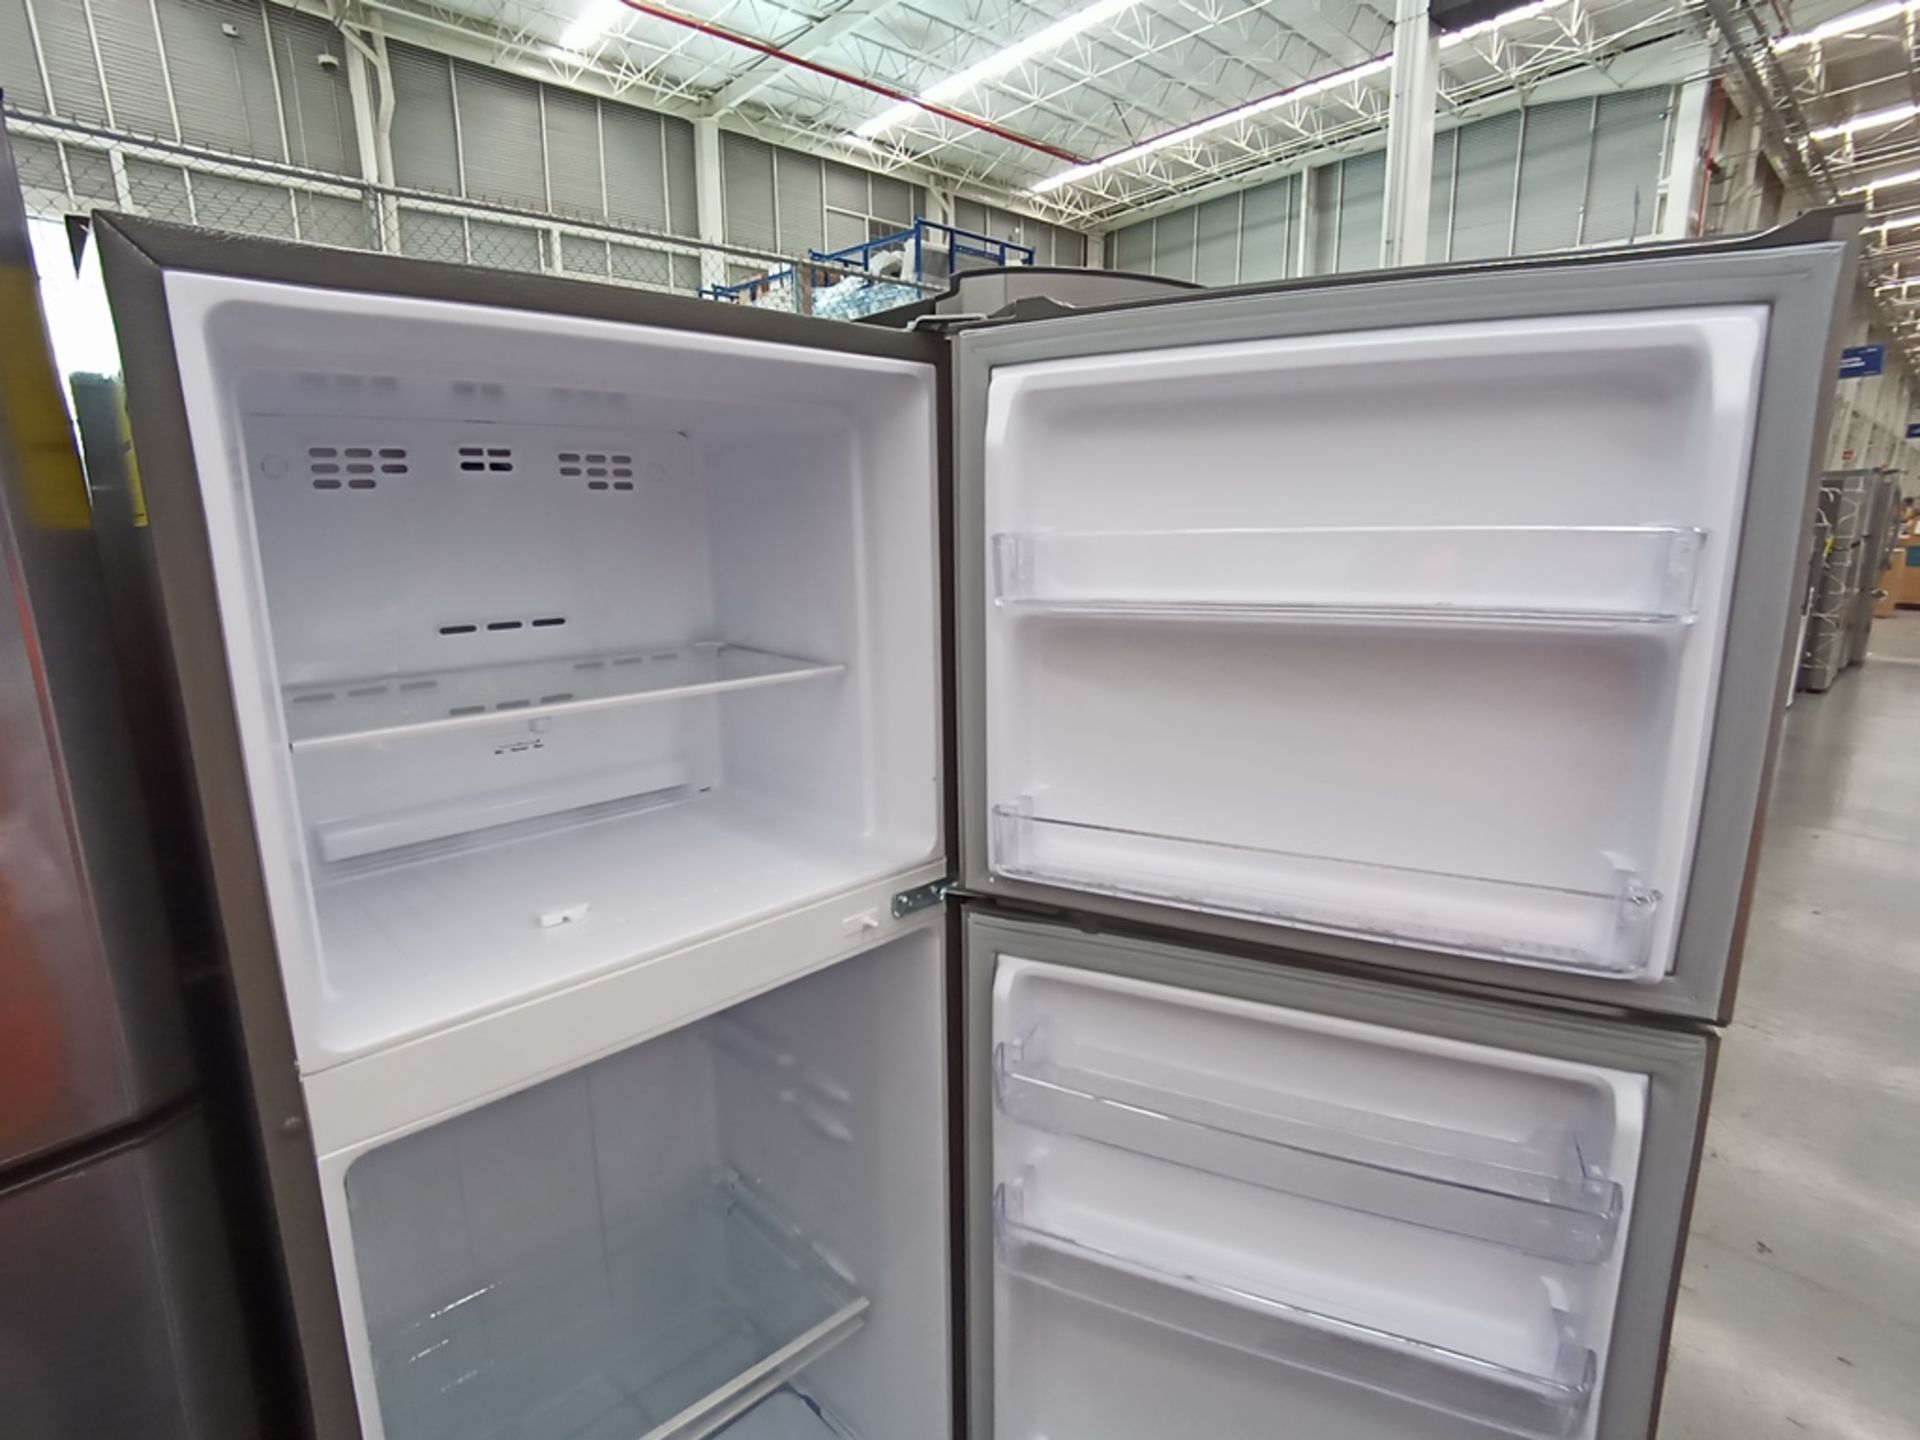 Lote de 2 refrigeradores contiene: 1 Refrigerador con dispensador de agua, Marca Winia, Modelo DFR- - Image 8 of 15